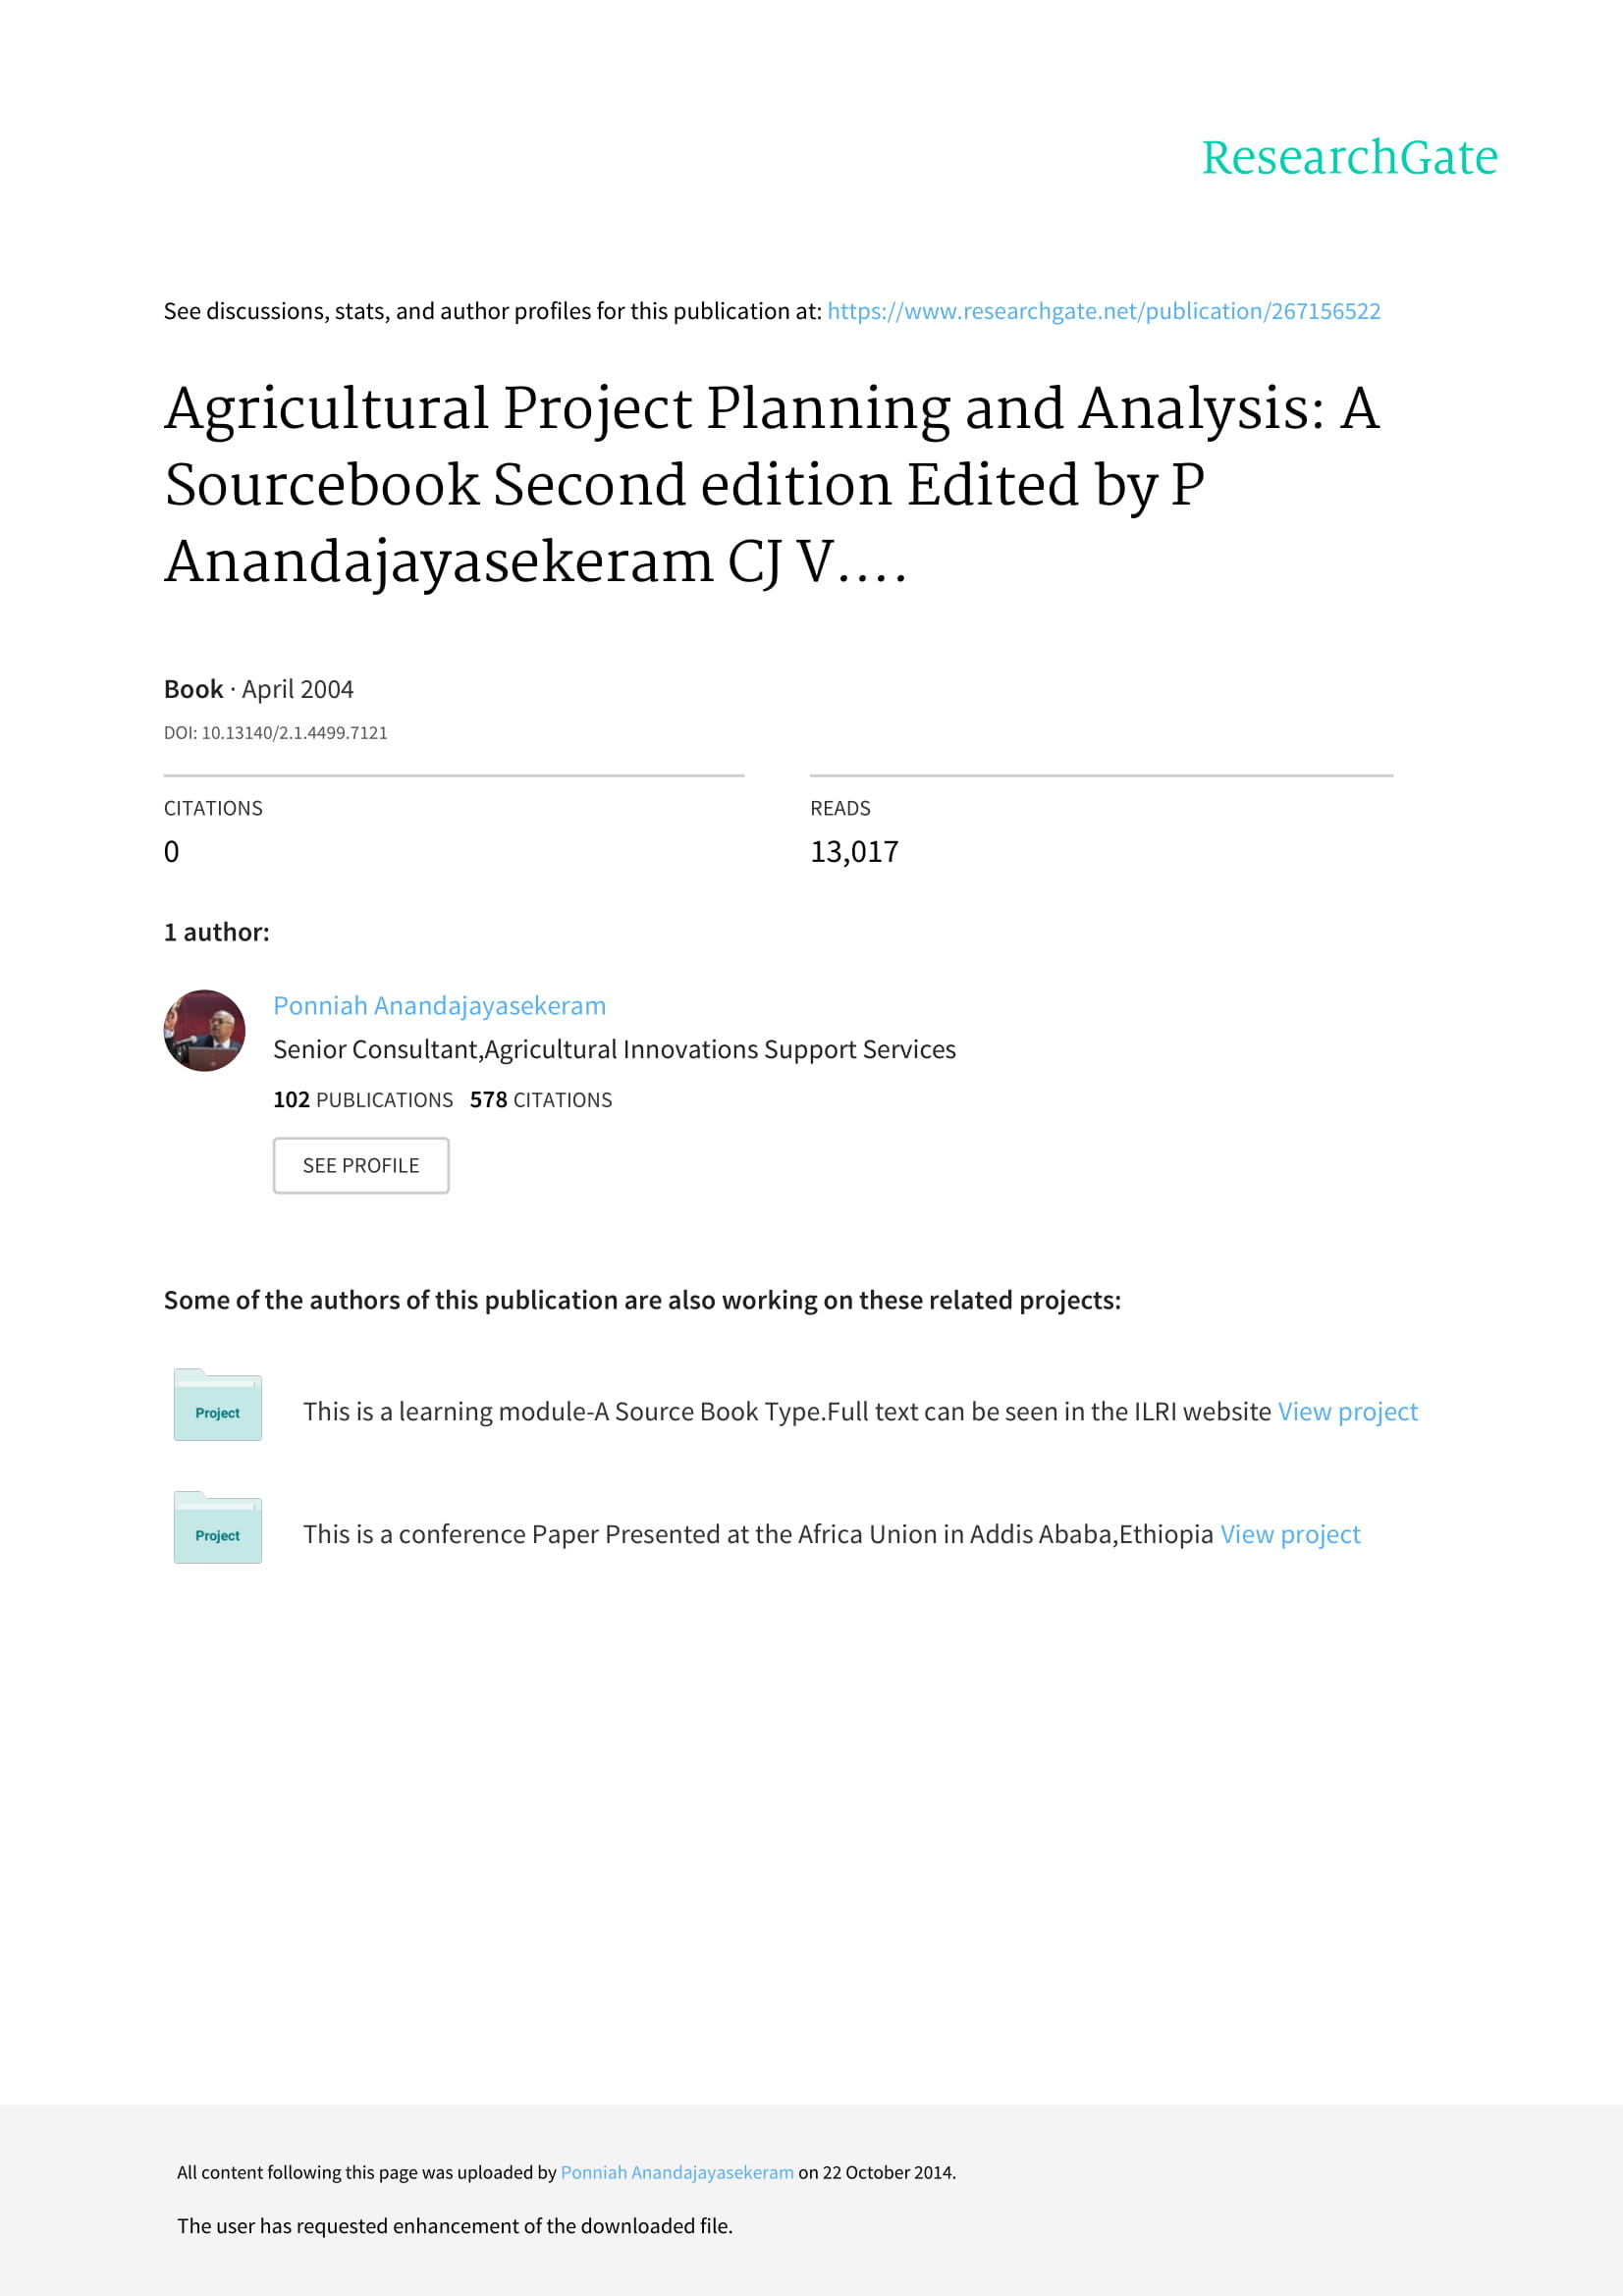 agriculturalprojectplanningandanalysis